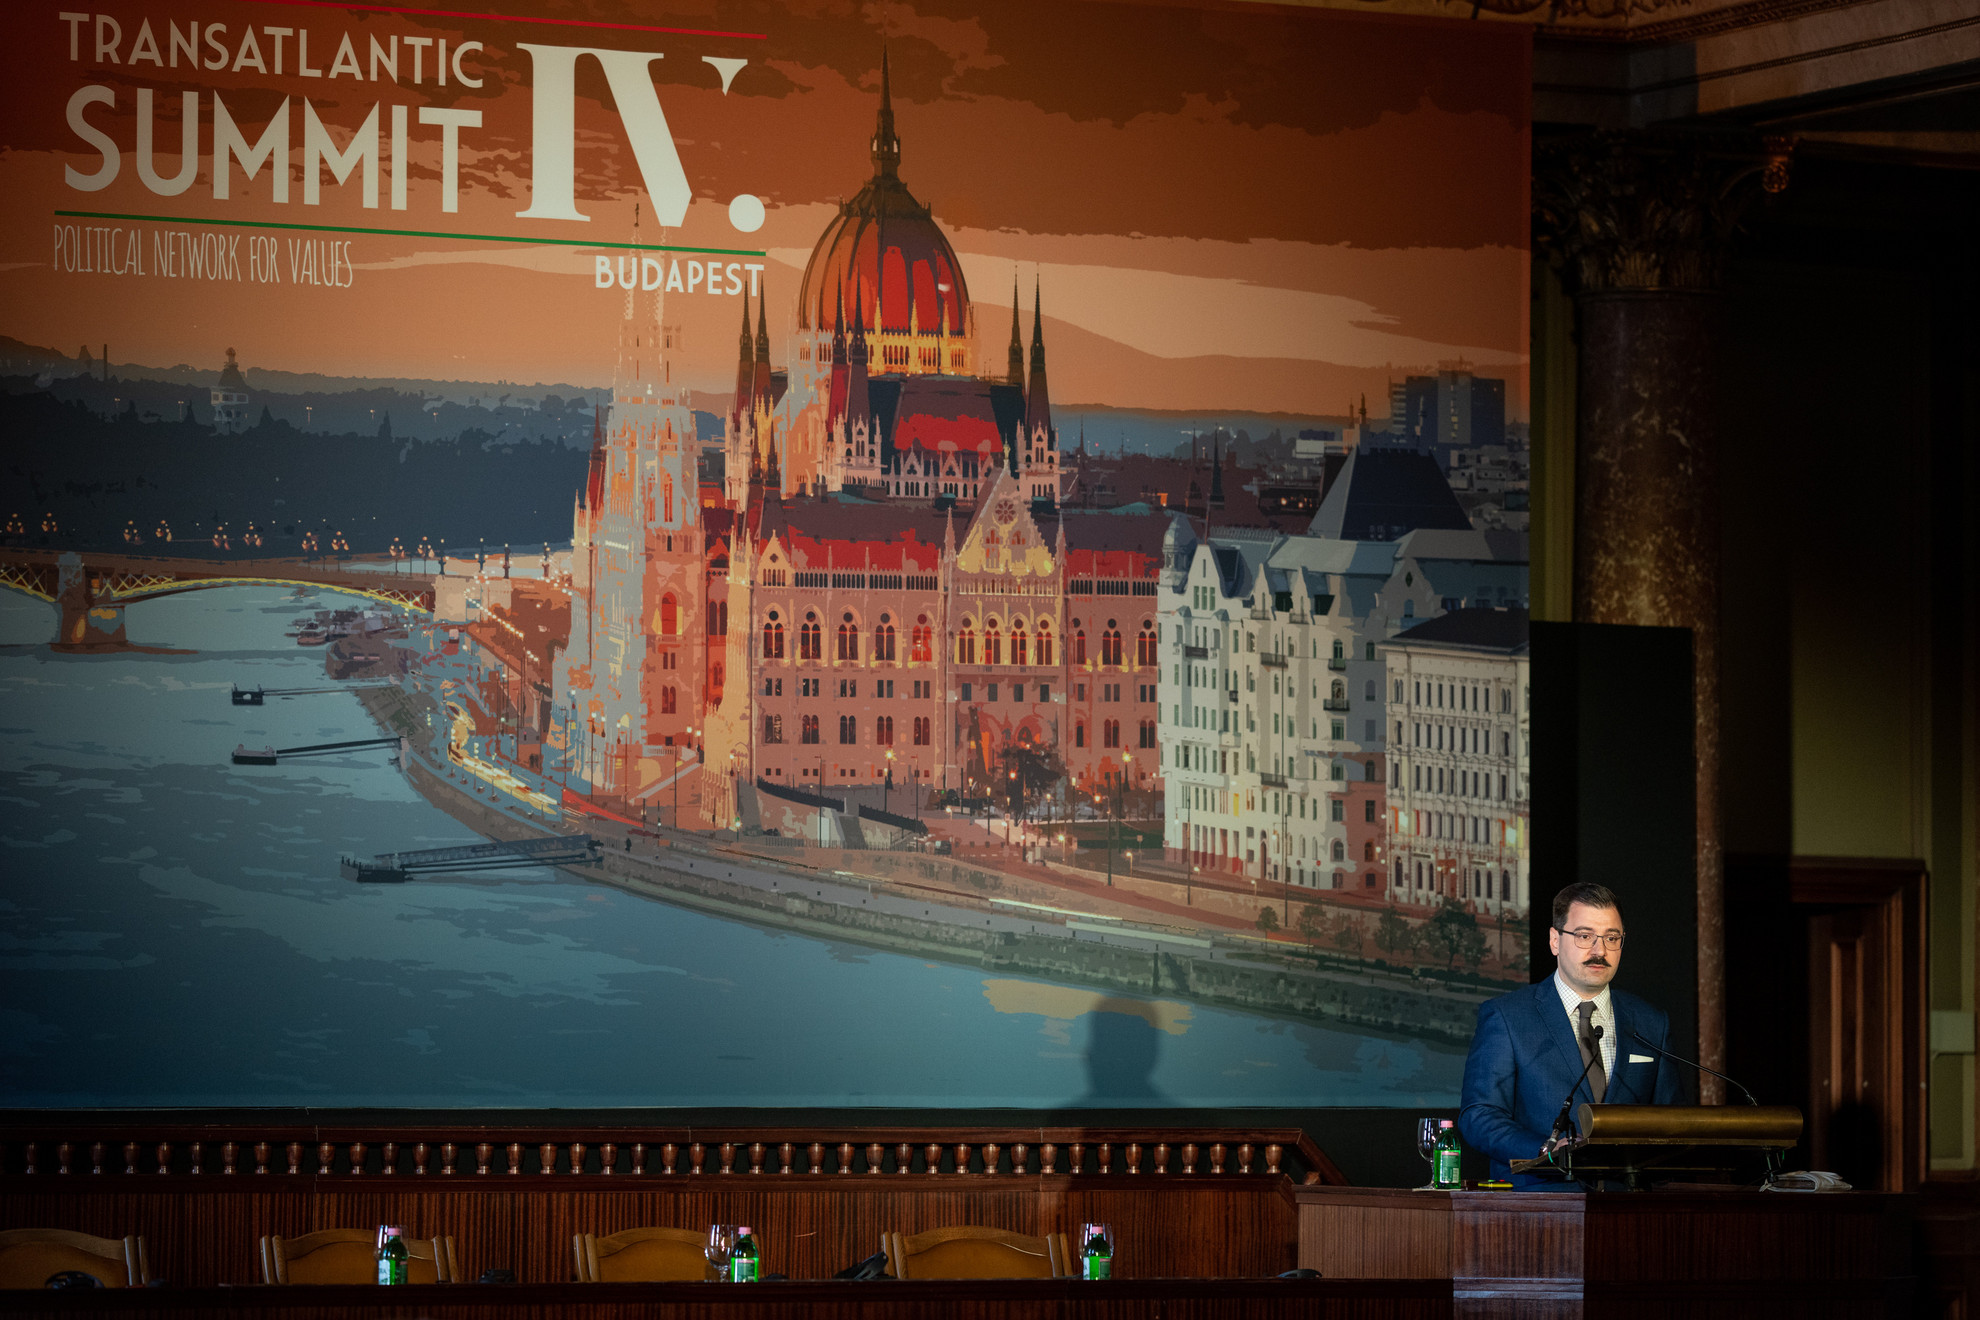 Szánthó Miklós részvételével zajlott a Political Network of Values IV. Transatlantic Summit elnevezésű budapesti konferenciájának 2. napja